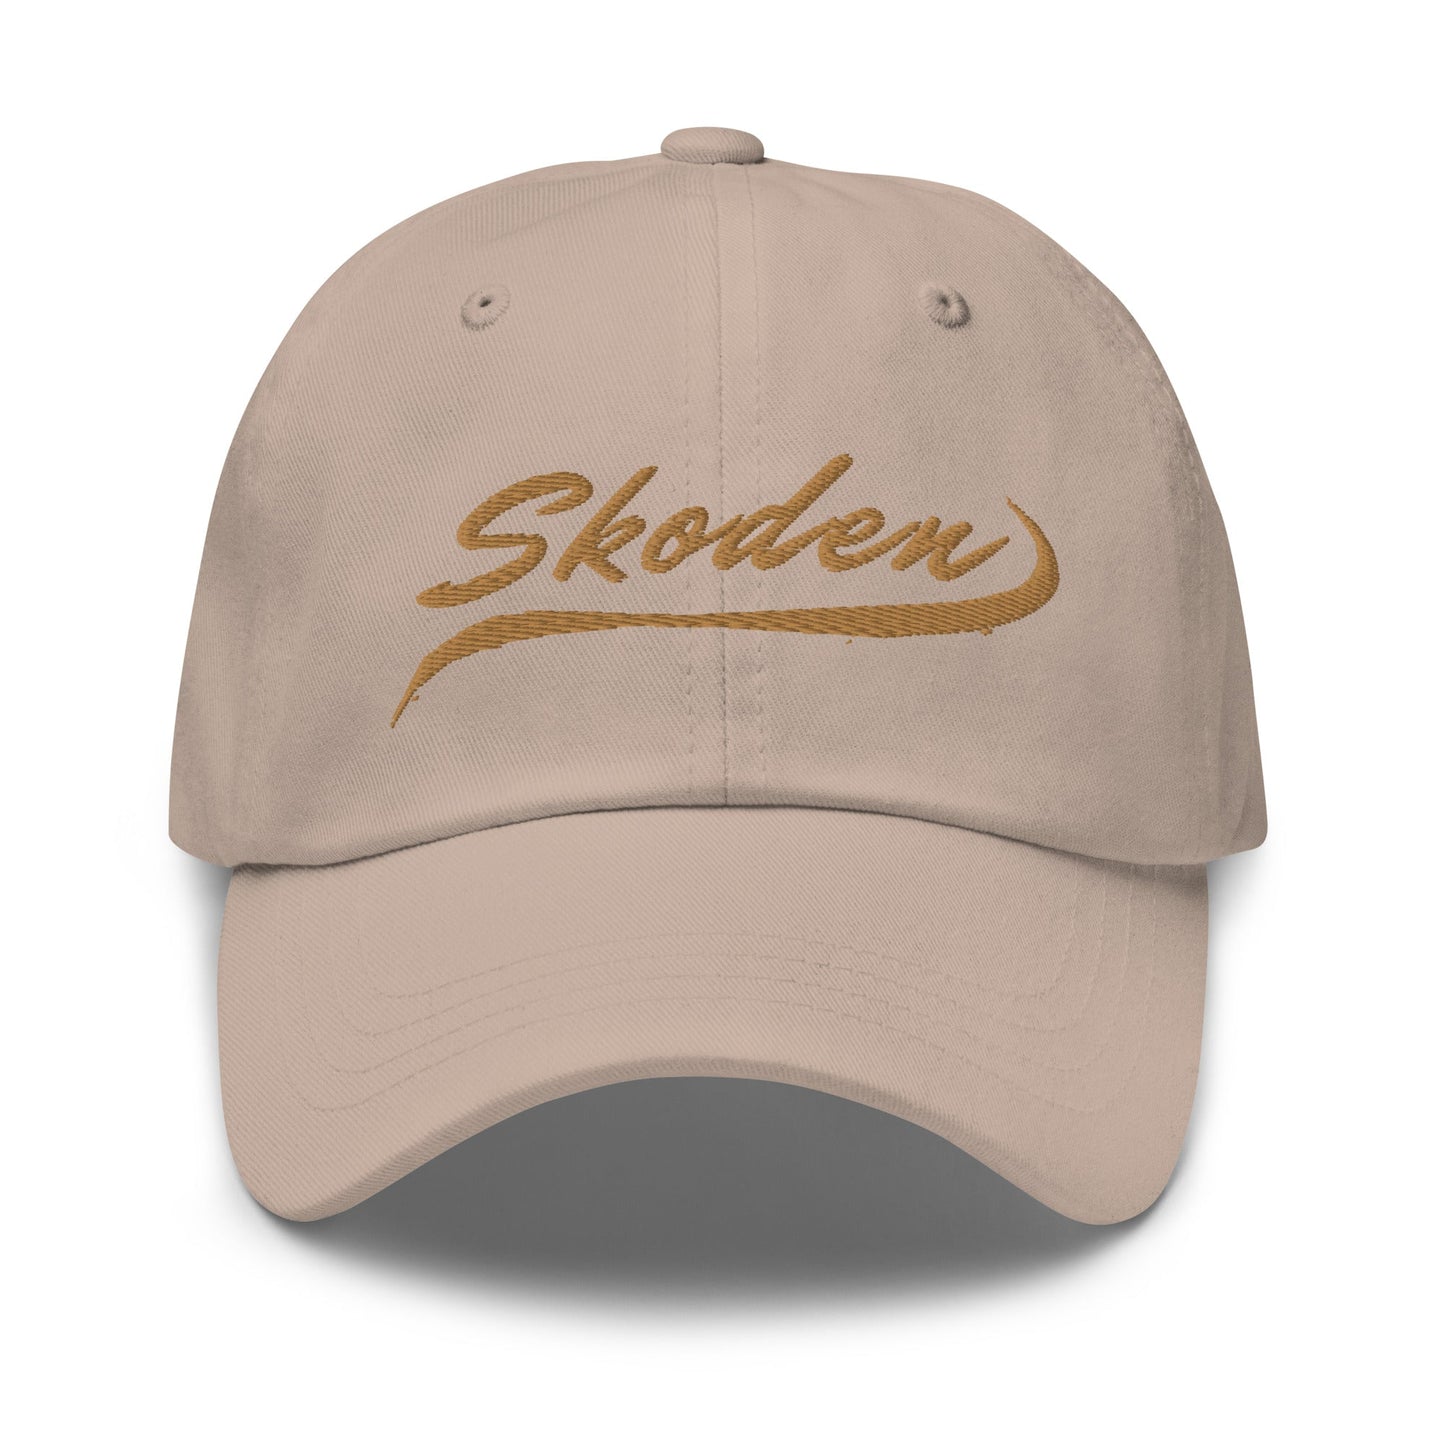 Skoden Dad hat - Nikikw Designs